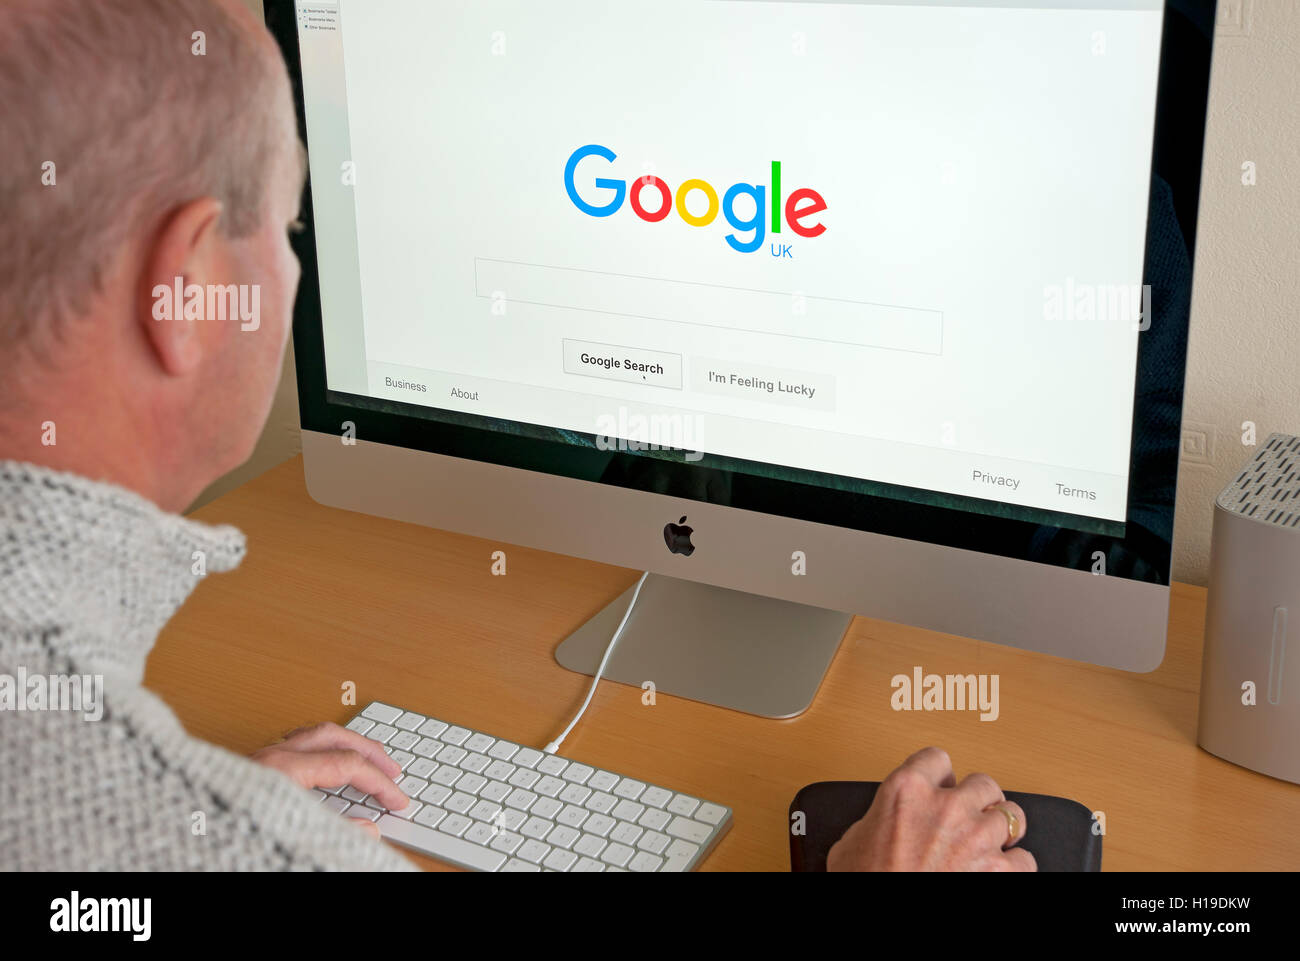 Mann Person, die auf der Homepage der Google UK Website auf dem Computerbildschirm im Internet anschaut Großbritannien Großbritannien Großbritannien Großbritannien Großbritannien Großbritannien Großbritannien Stockfoto